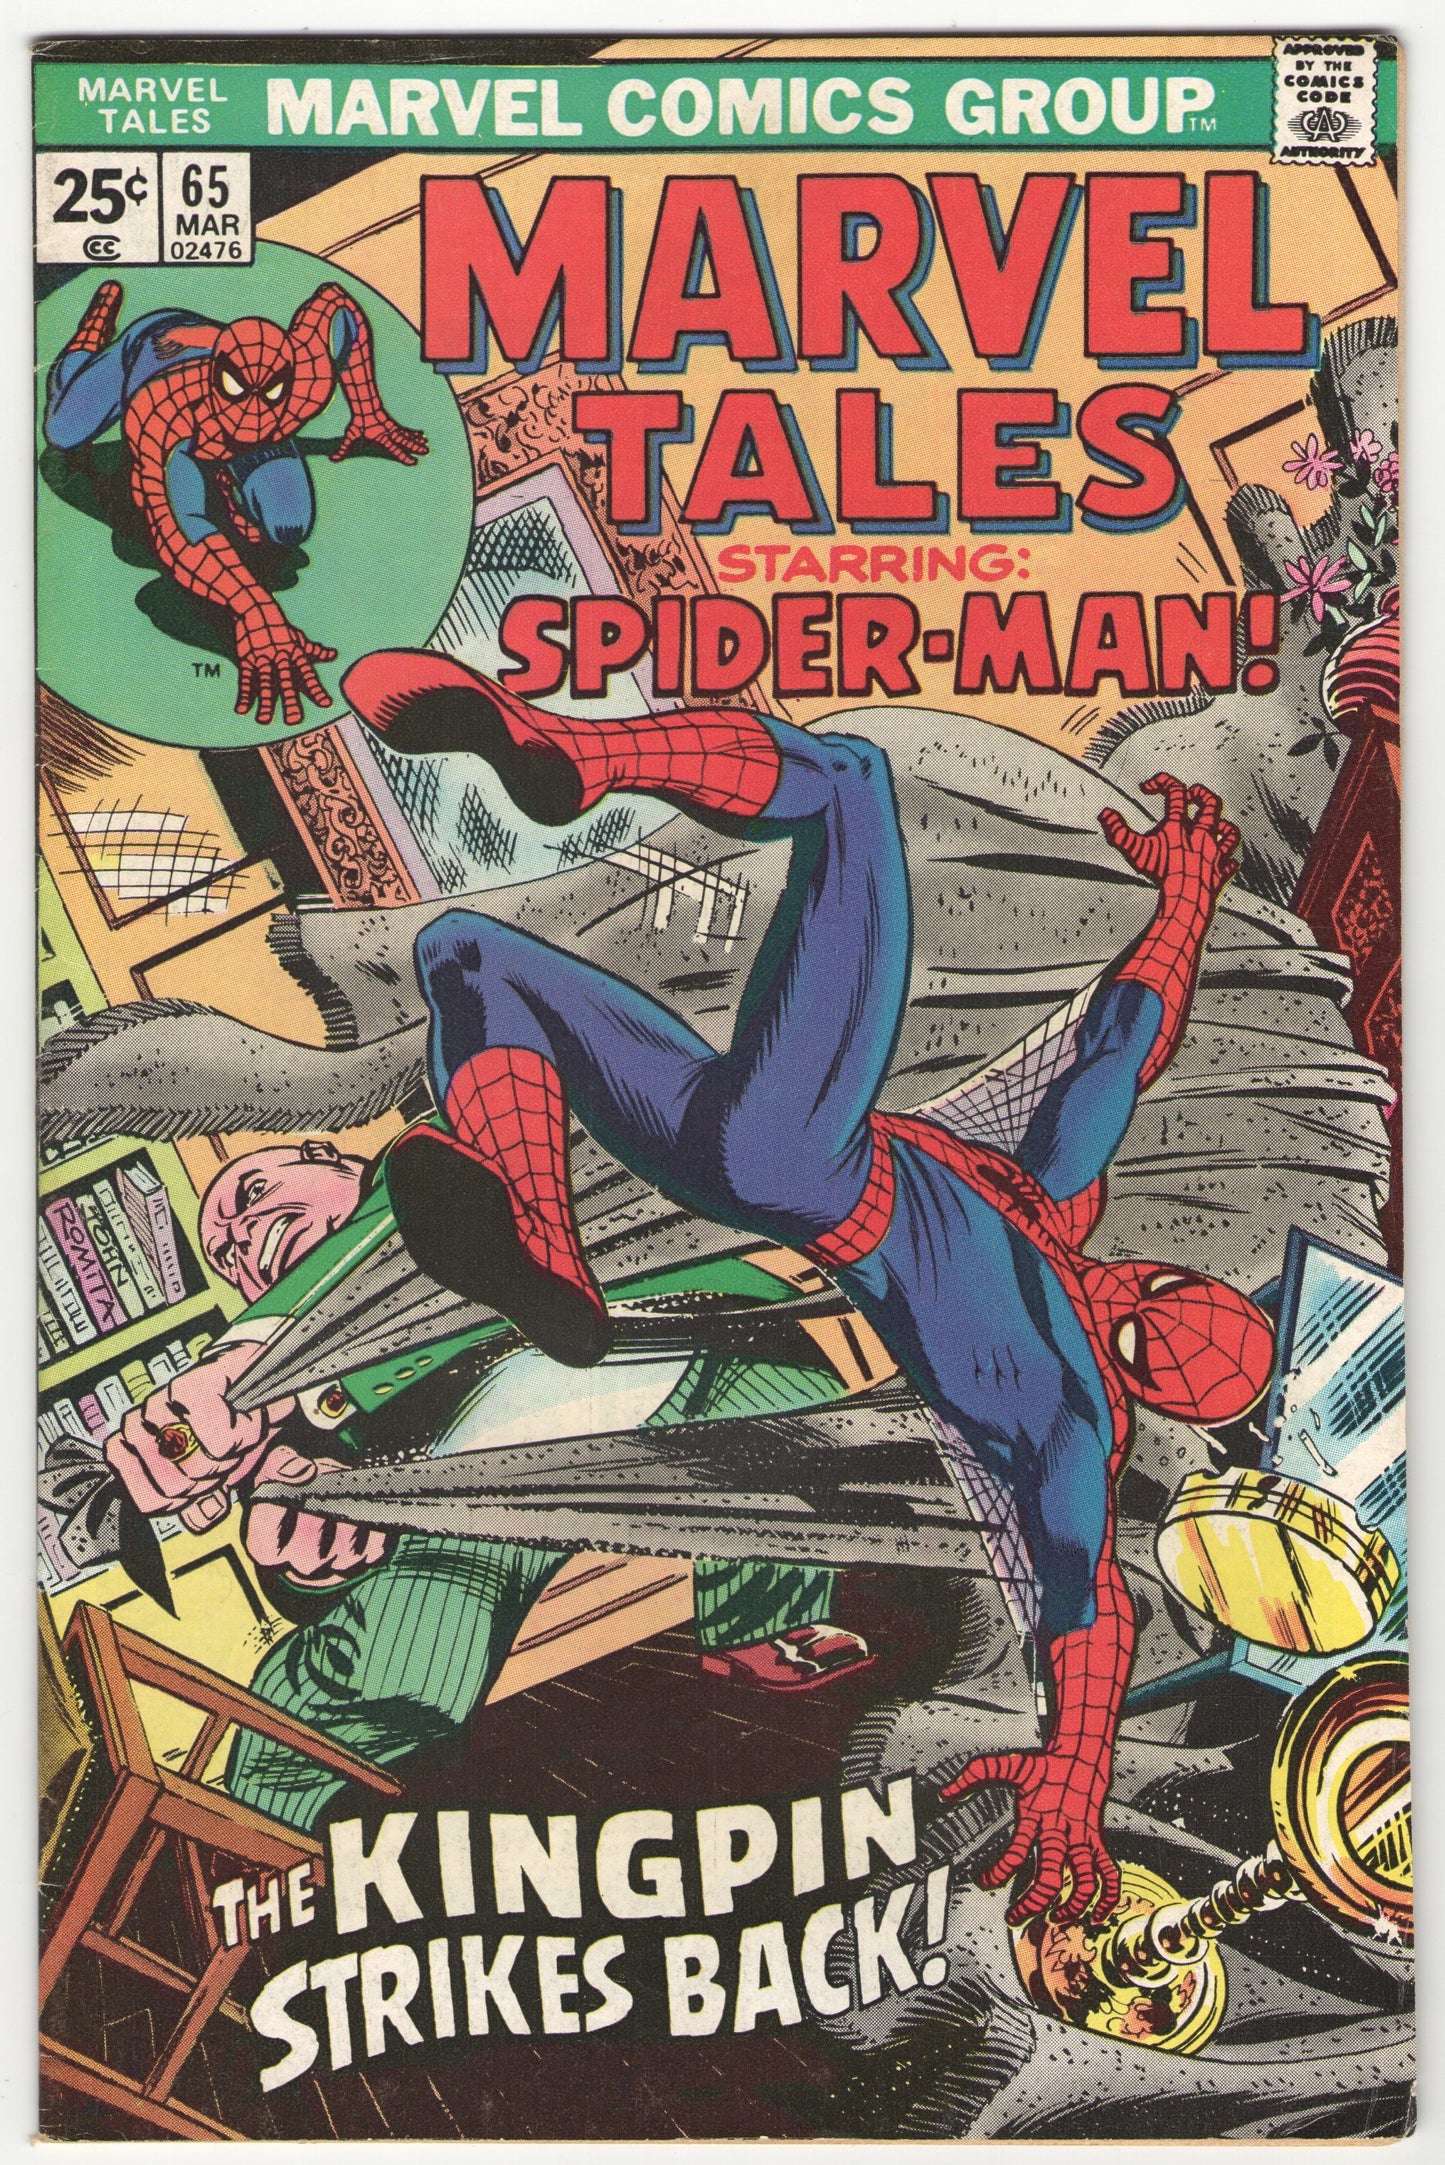 Marvel Tales #65 (1976)